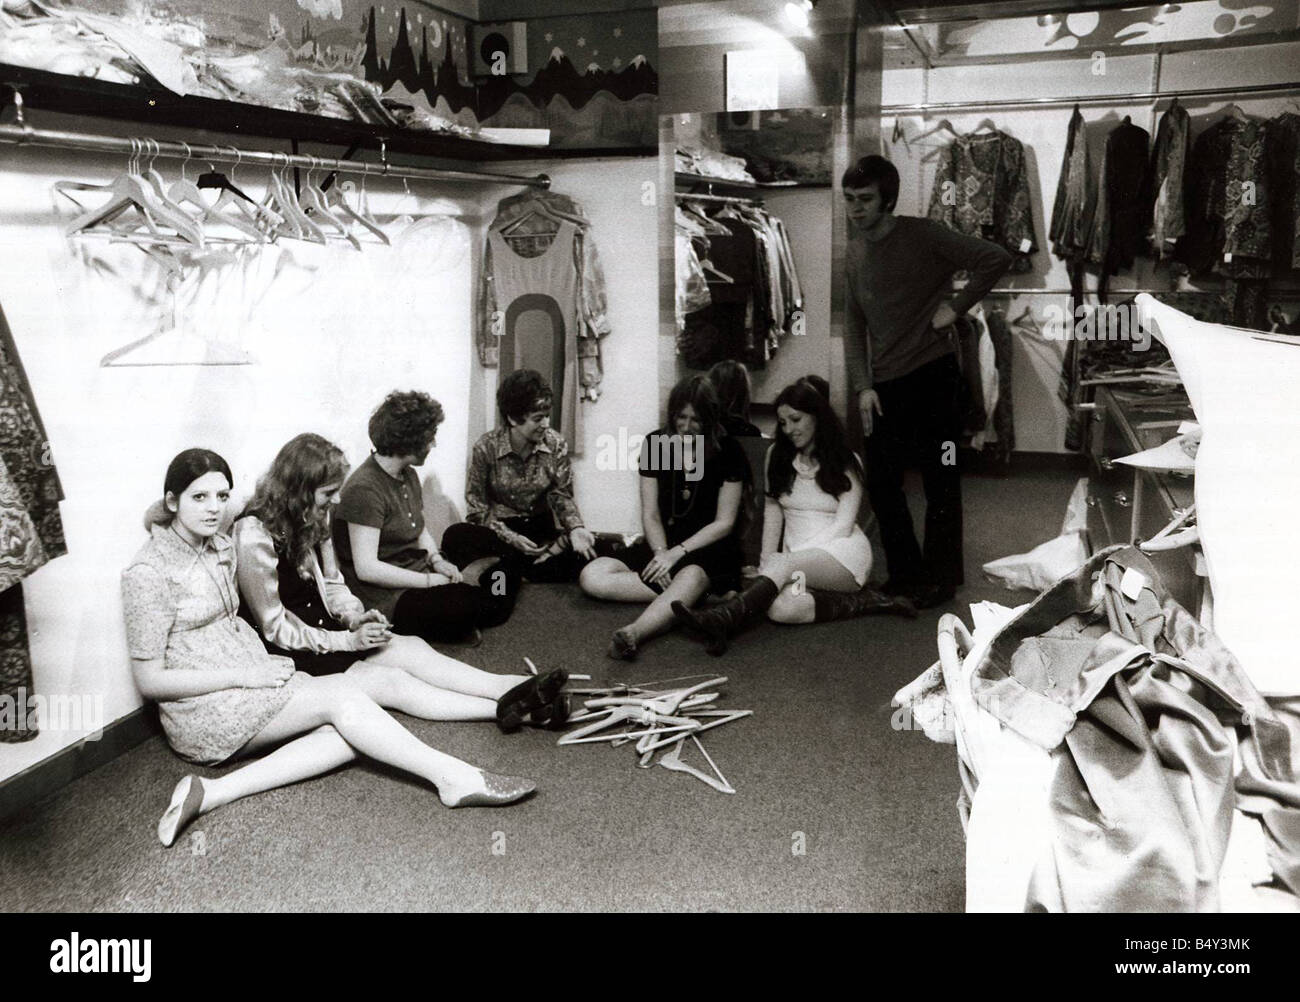 Les femmes se reposer après une dure journée dans shop 1968 jeunes travailleurs boutique fermeture fatigué les cintres des boutiques de vêtements shop shopping Banque D'Images